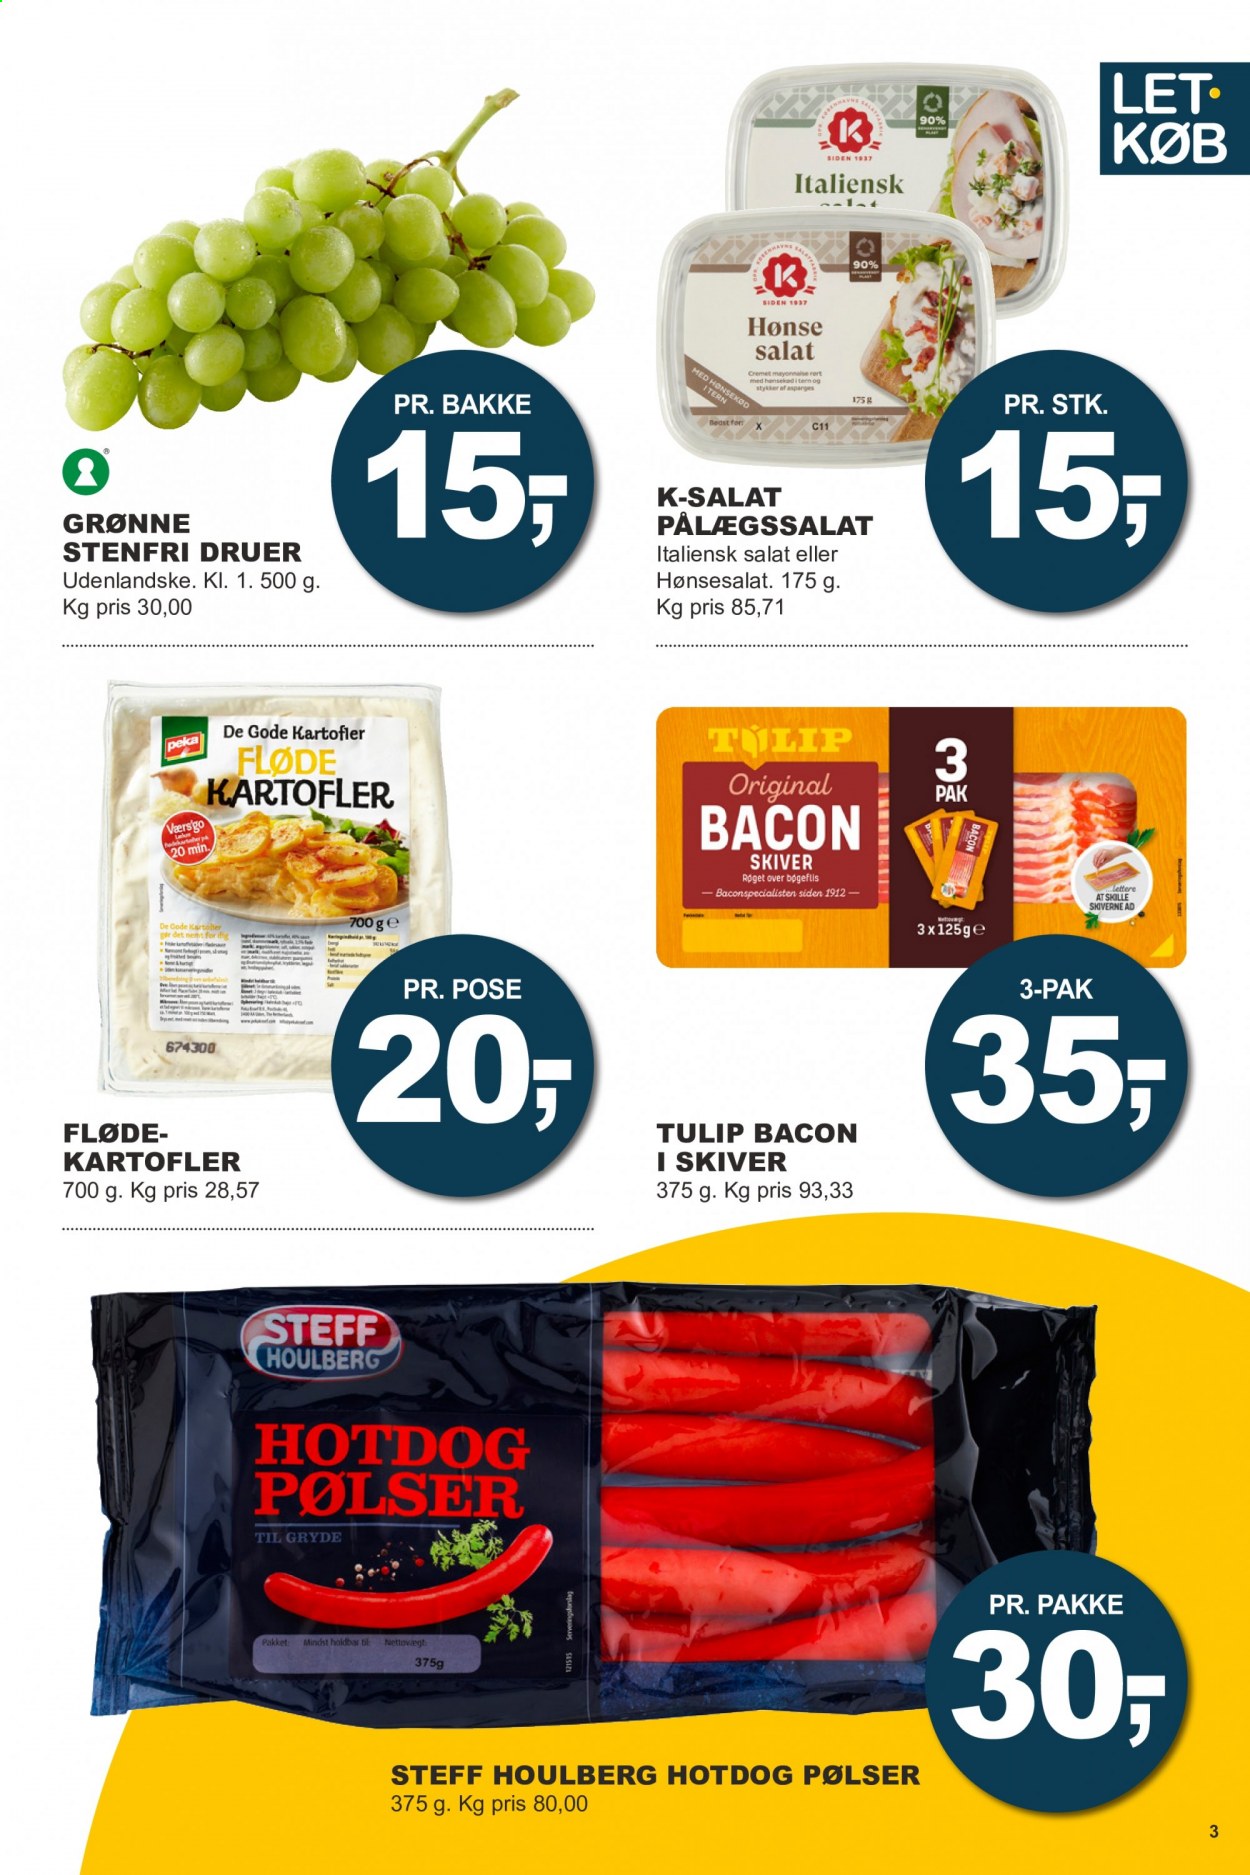 thumbnail - Let-Køb tilbud  - 26.4.2021 - 9.5.2021 - tilbudsprodukter - vindruer, hot dog, Steff Houlberg, flødekartofler, bacon, hotdog pølser, pølser, pålægssalat, mayonnaise. Side 3.